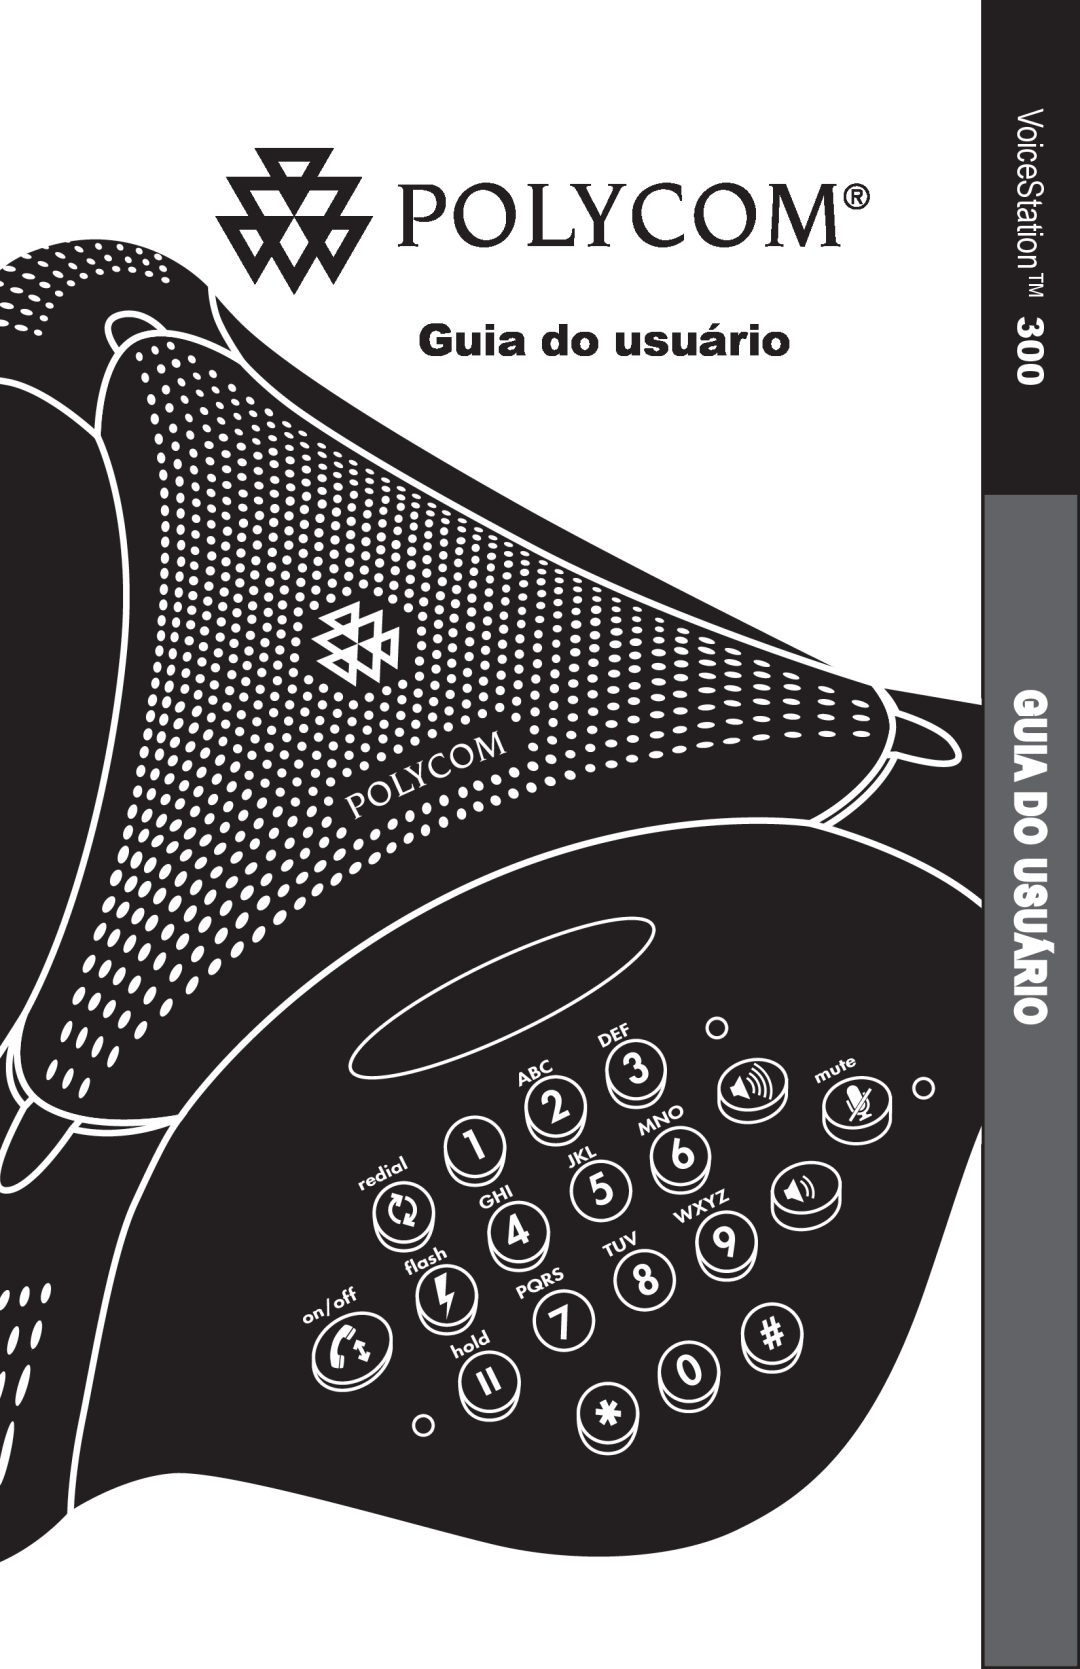 Polycom 300 manual Guia do usuário, Guia Do Usuário, VoiceStation 